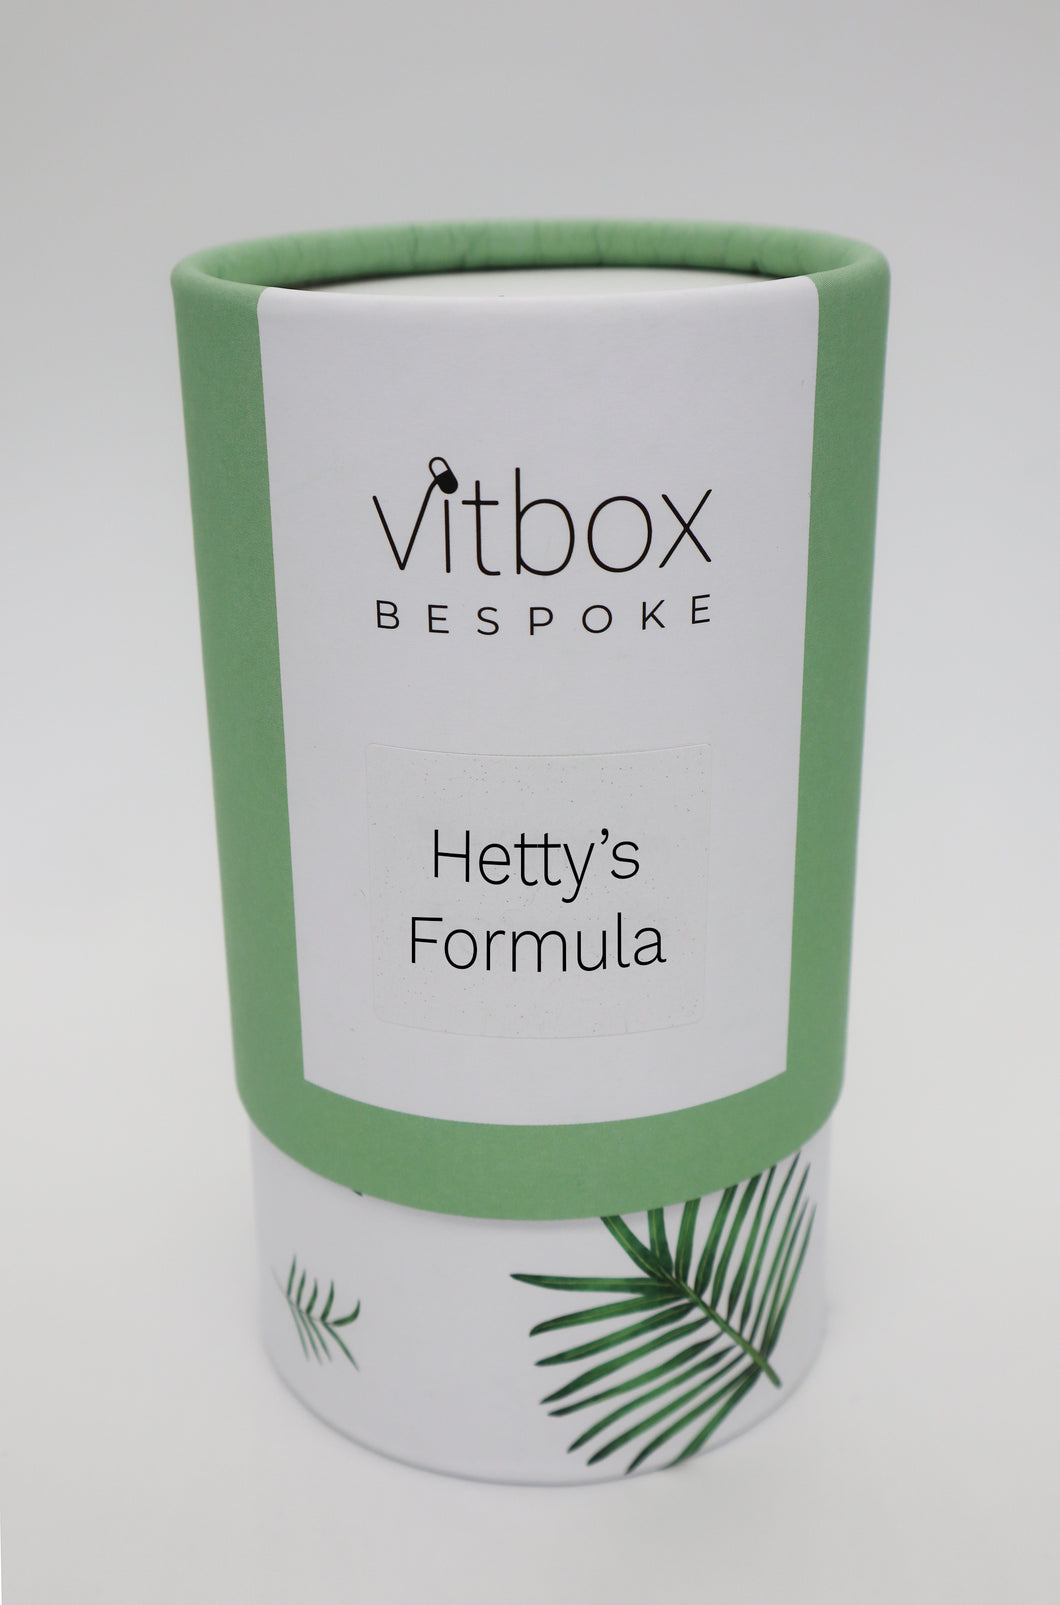 Hetty's Vitbox Bespoke